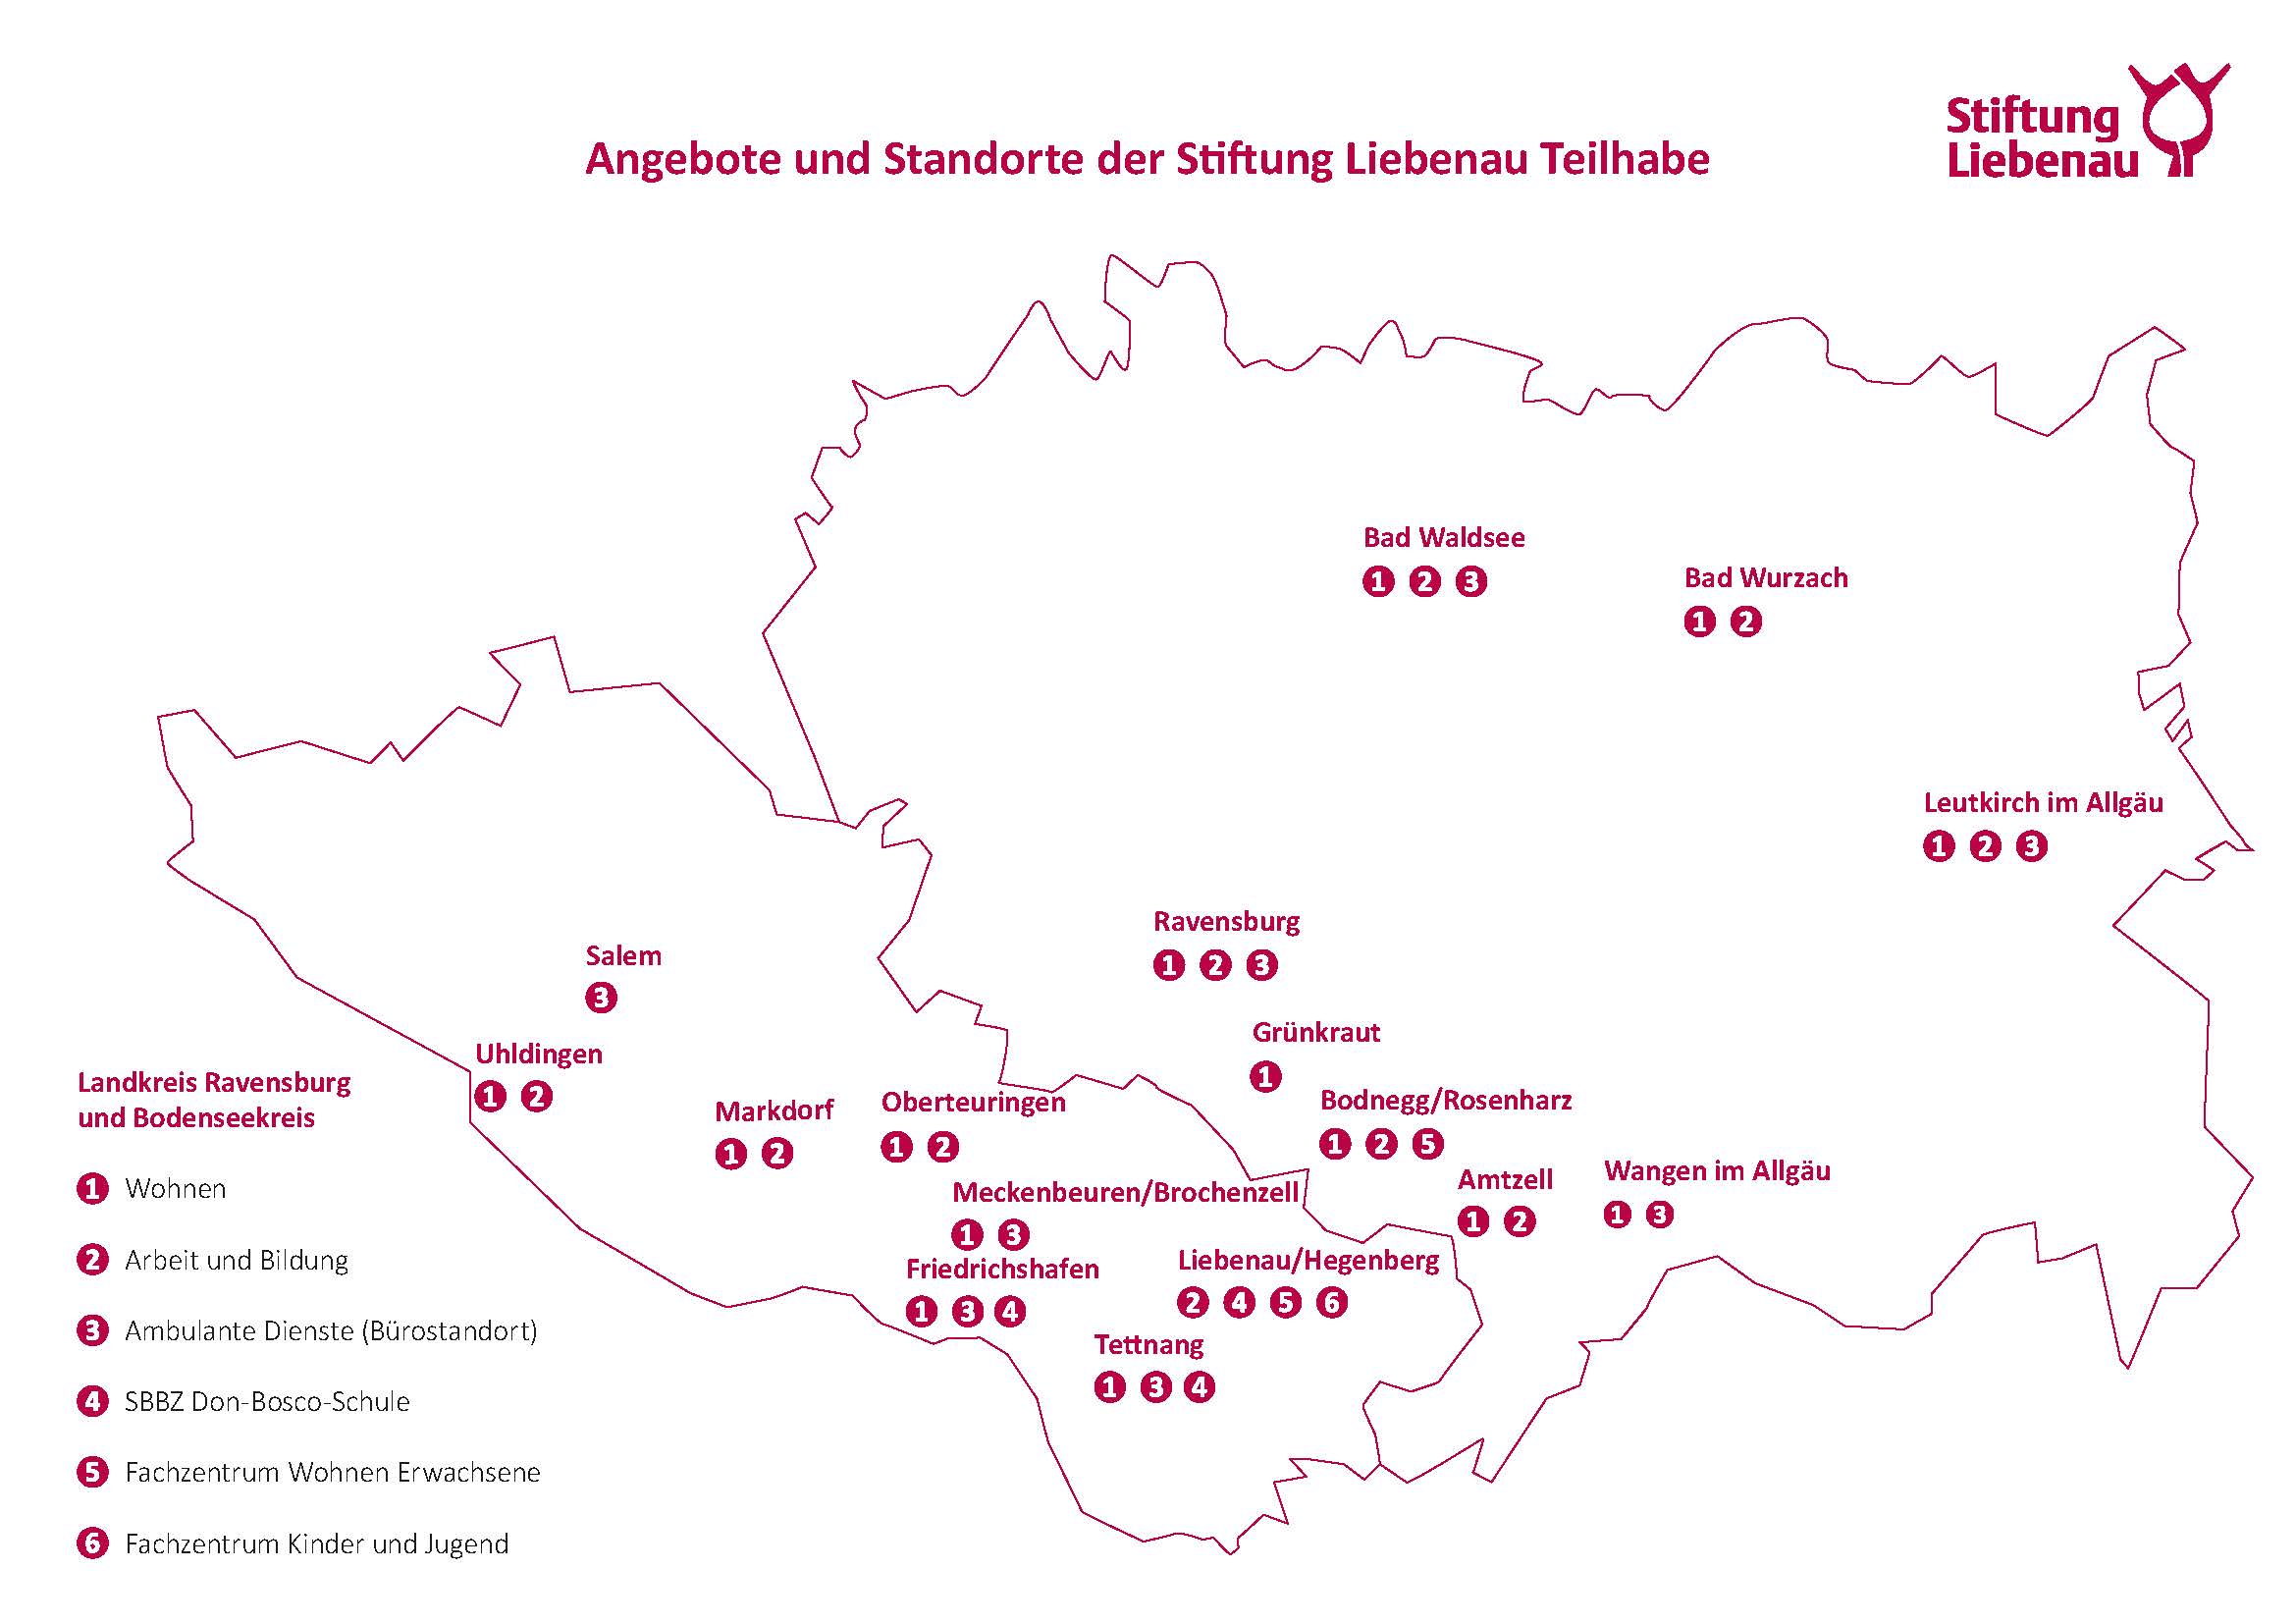 Angebote Standorte Bodenseekreis und LK Ravensburg